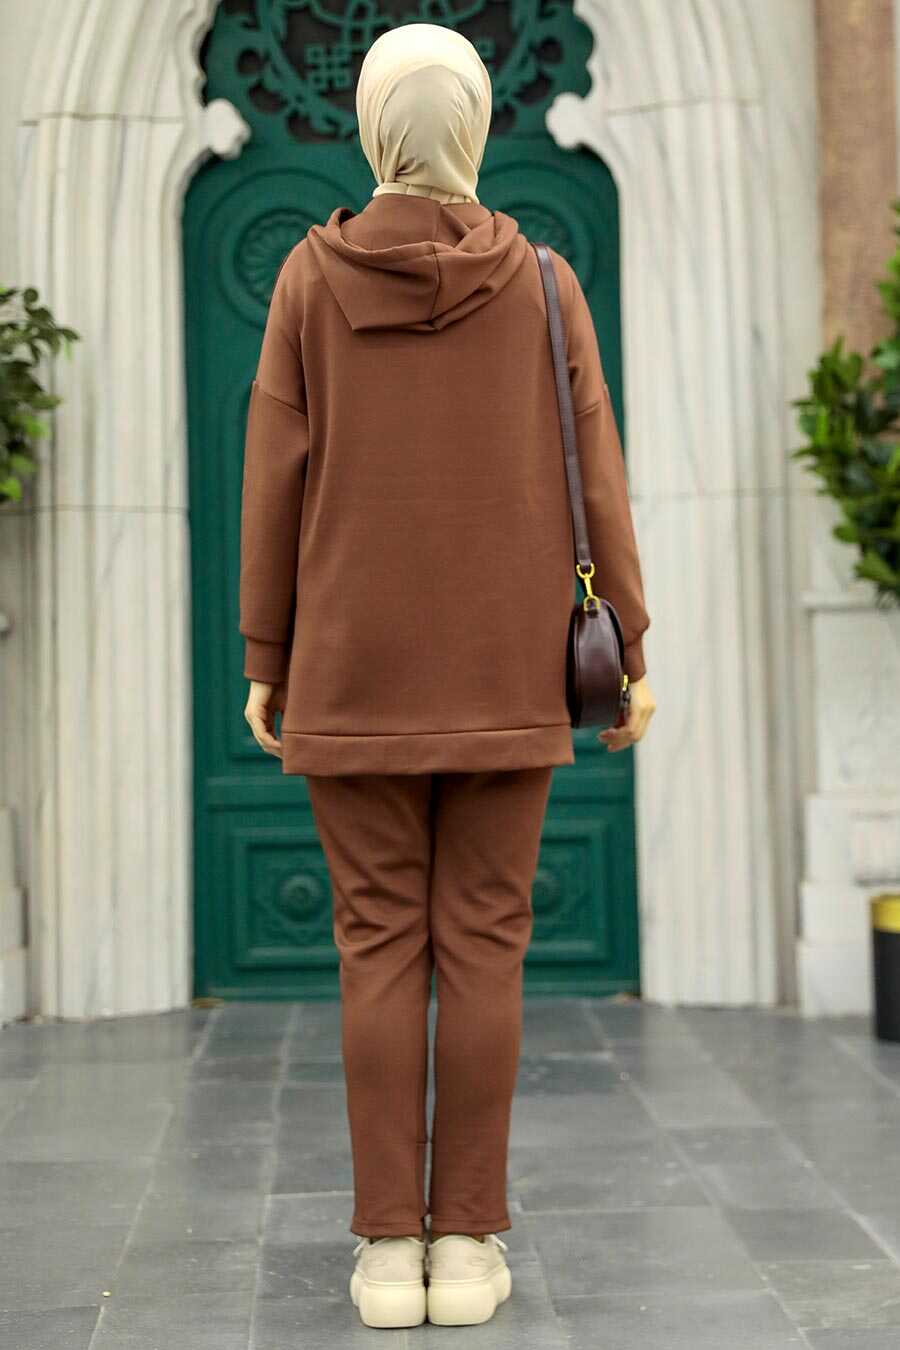 Neva Style - Chocolate Hijab Dual Suit 22186CK